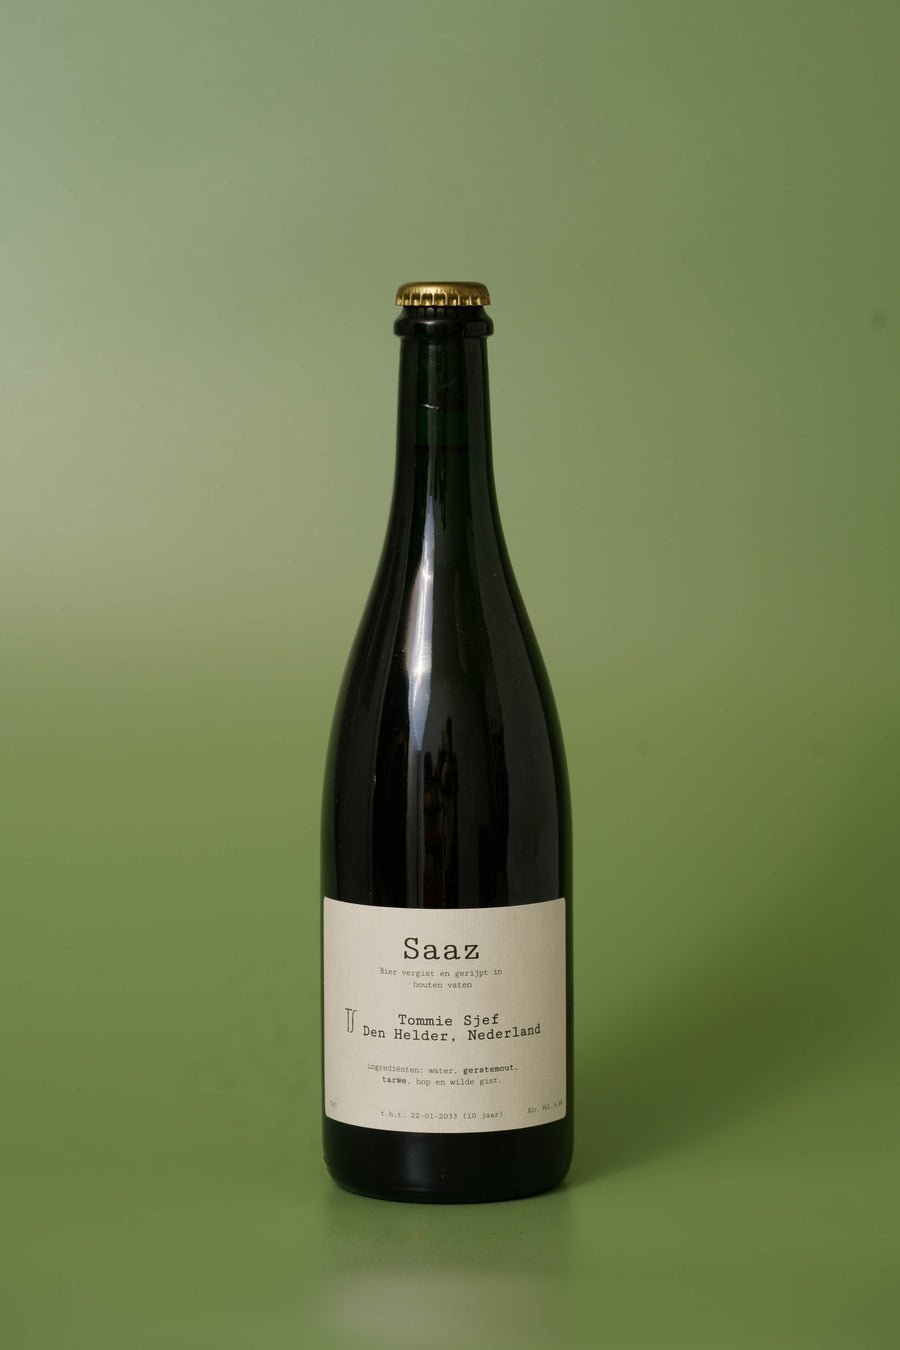 75cl bottle of Tommie Sjef - Saaz